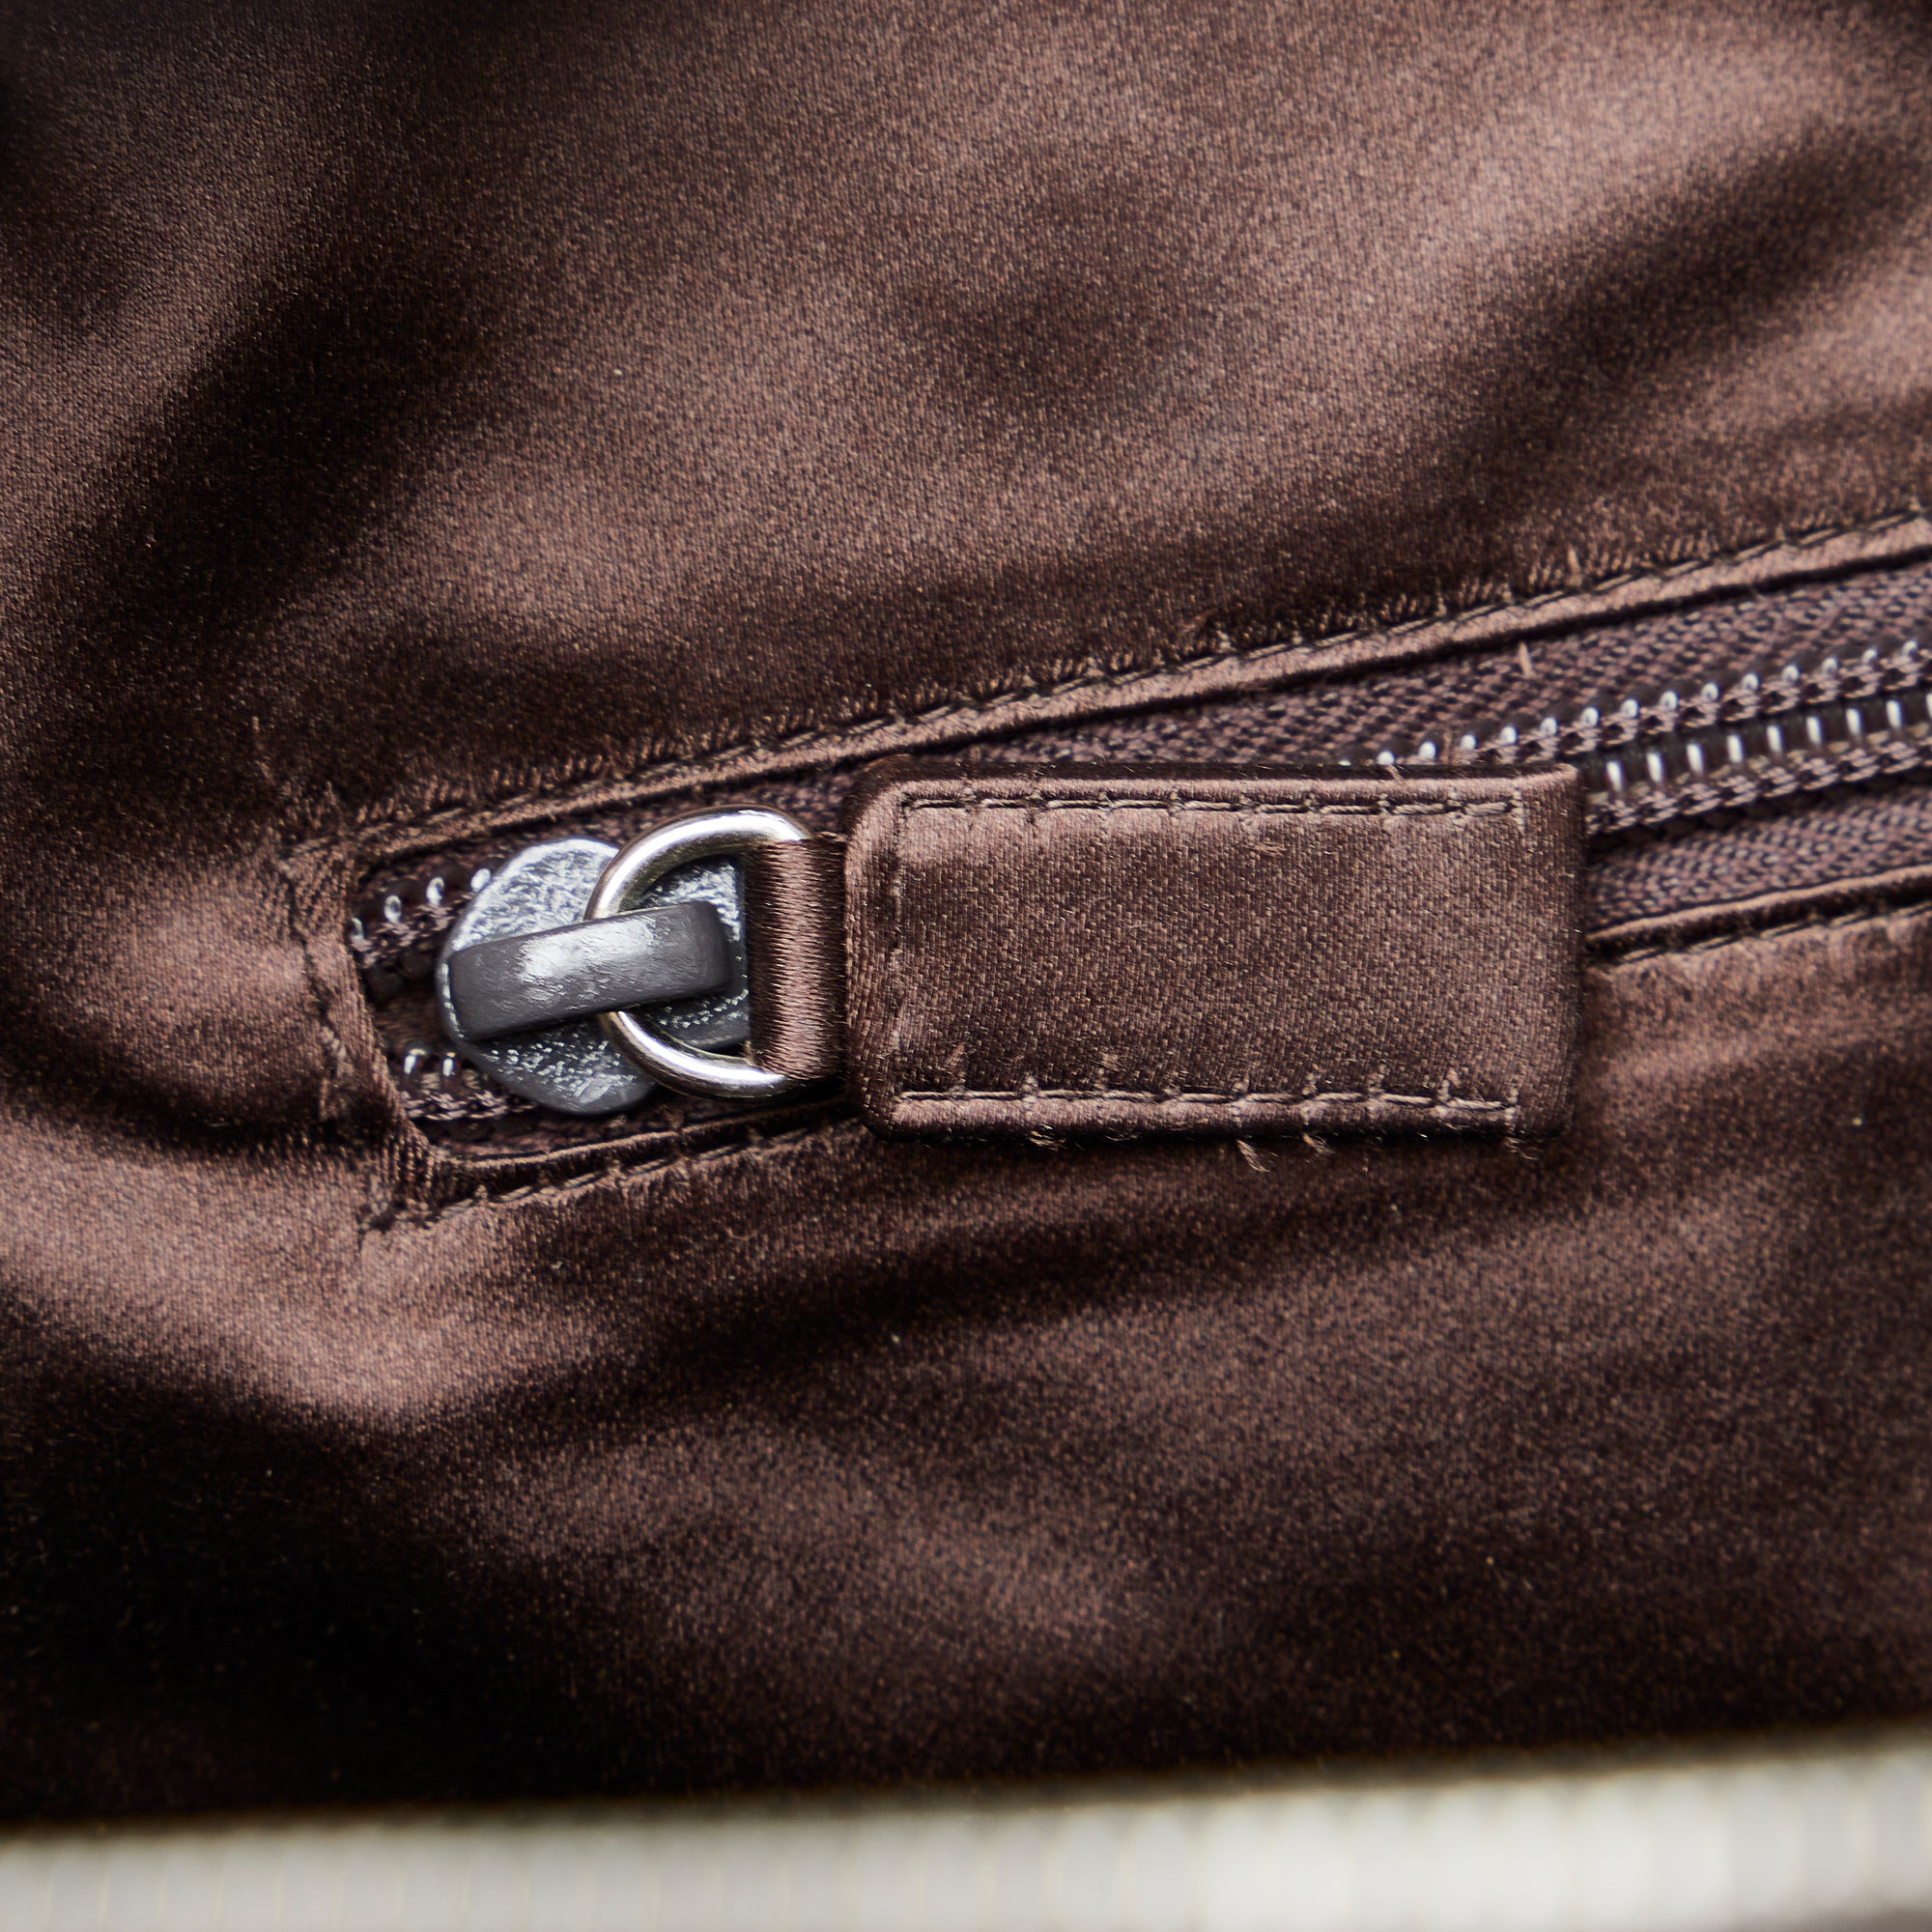 Brown Prada Canapa Bauletto Handbag – Designer Revival